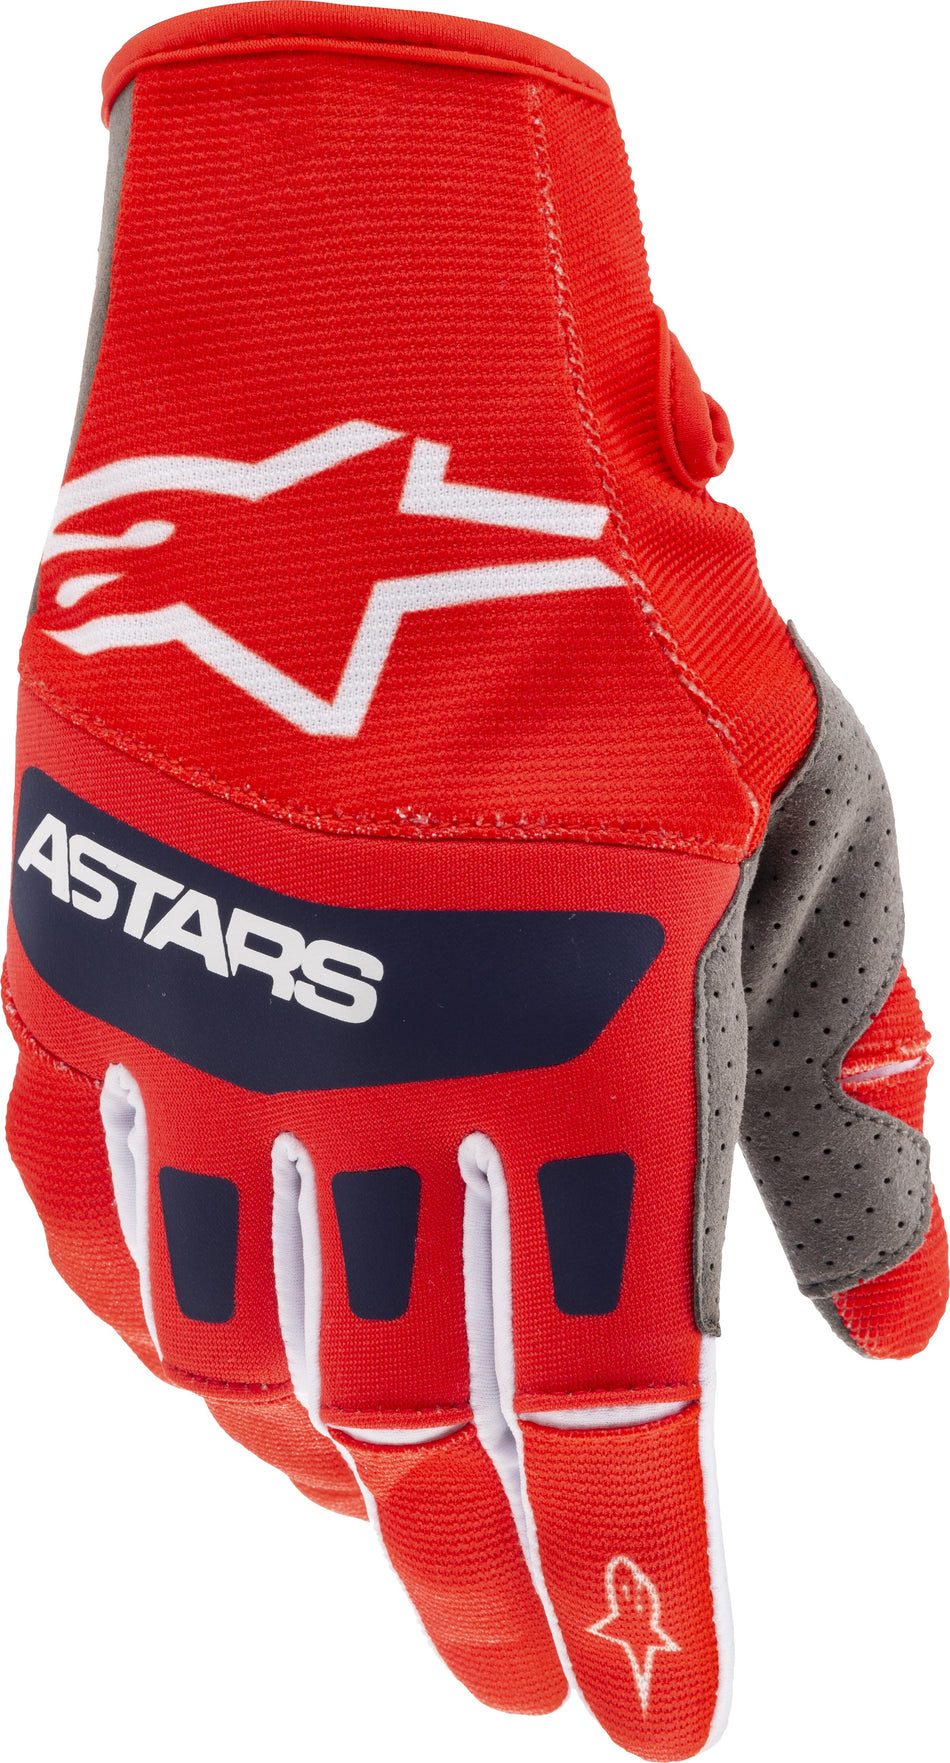 ALPINESTARS Techstar Gloves Bright Red/ White/Dark Blue Sm 3561021-337-S